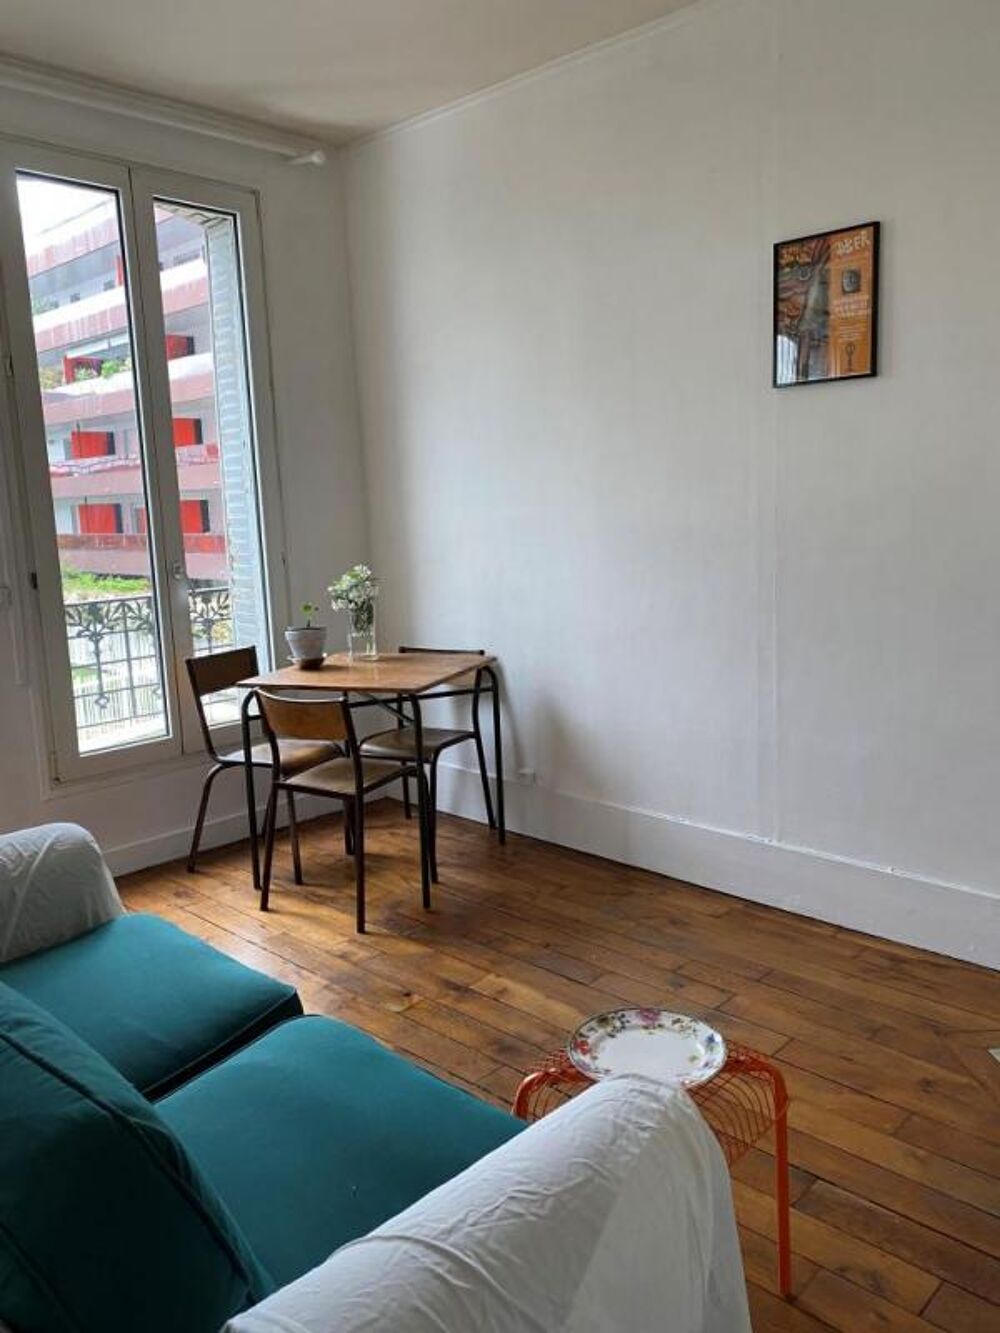 Location Appartement Appartement de 32m2  louer sur Boulogne Billancourt Boulogne billancourt